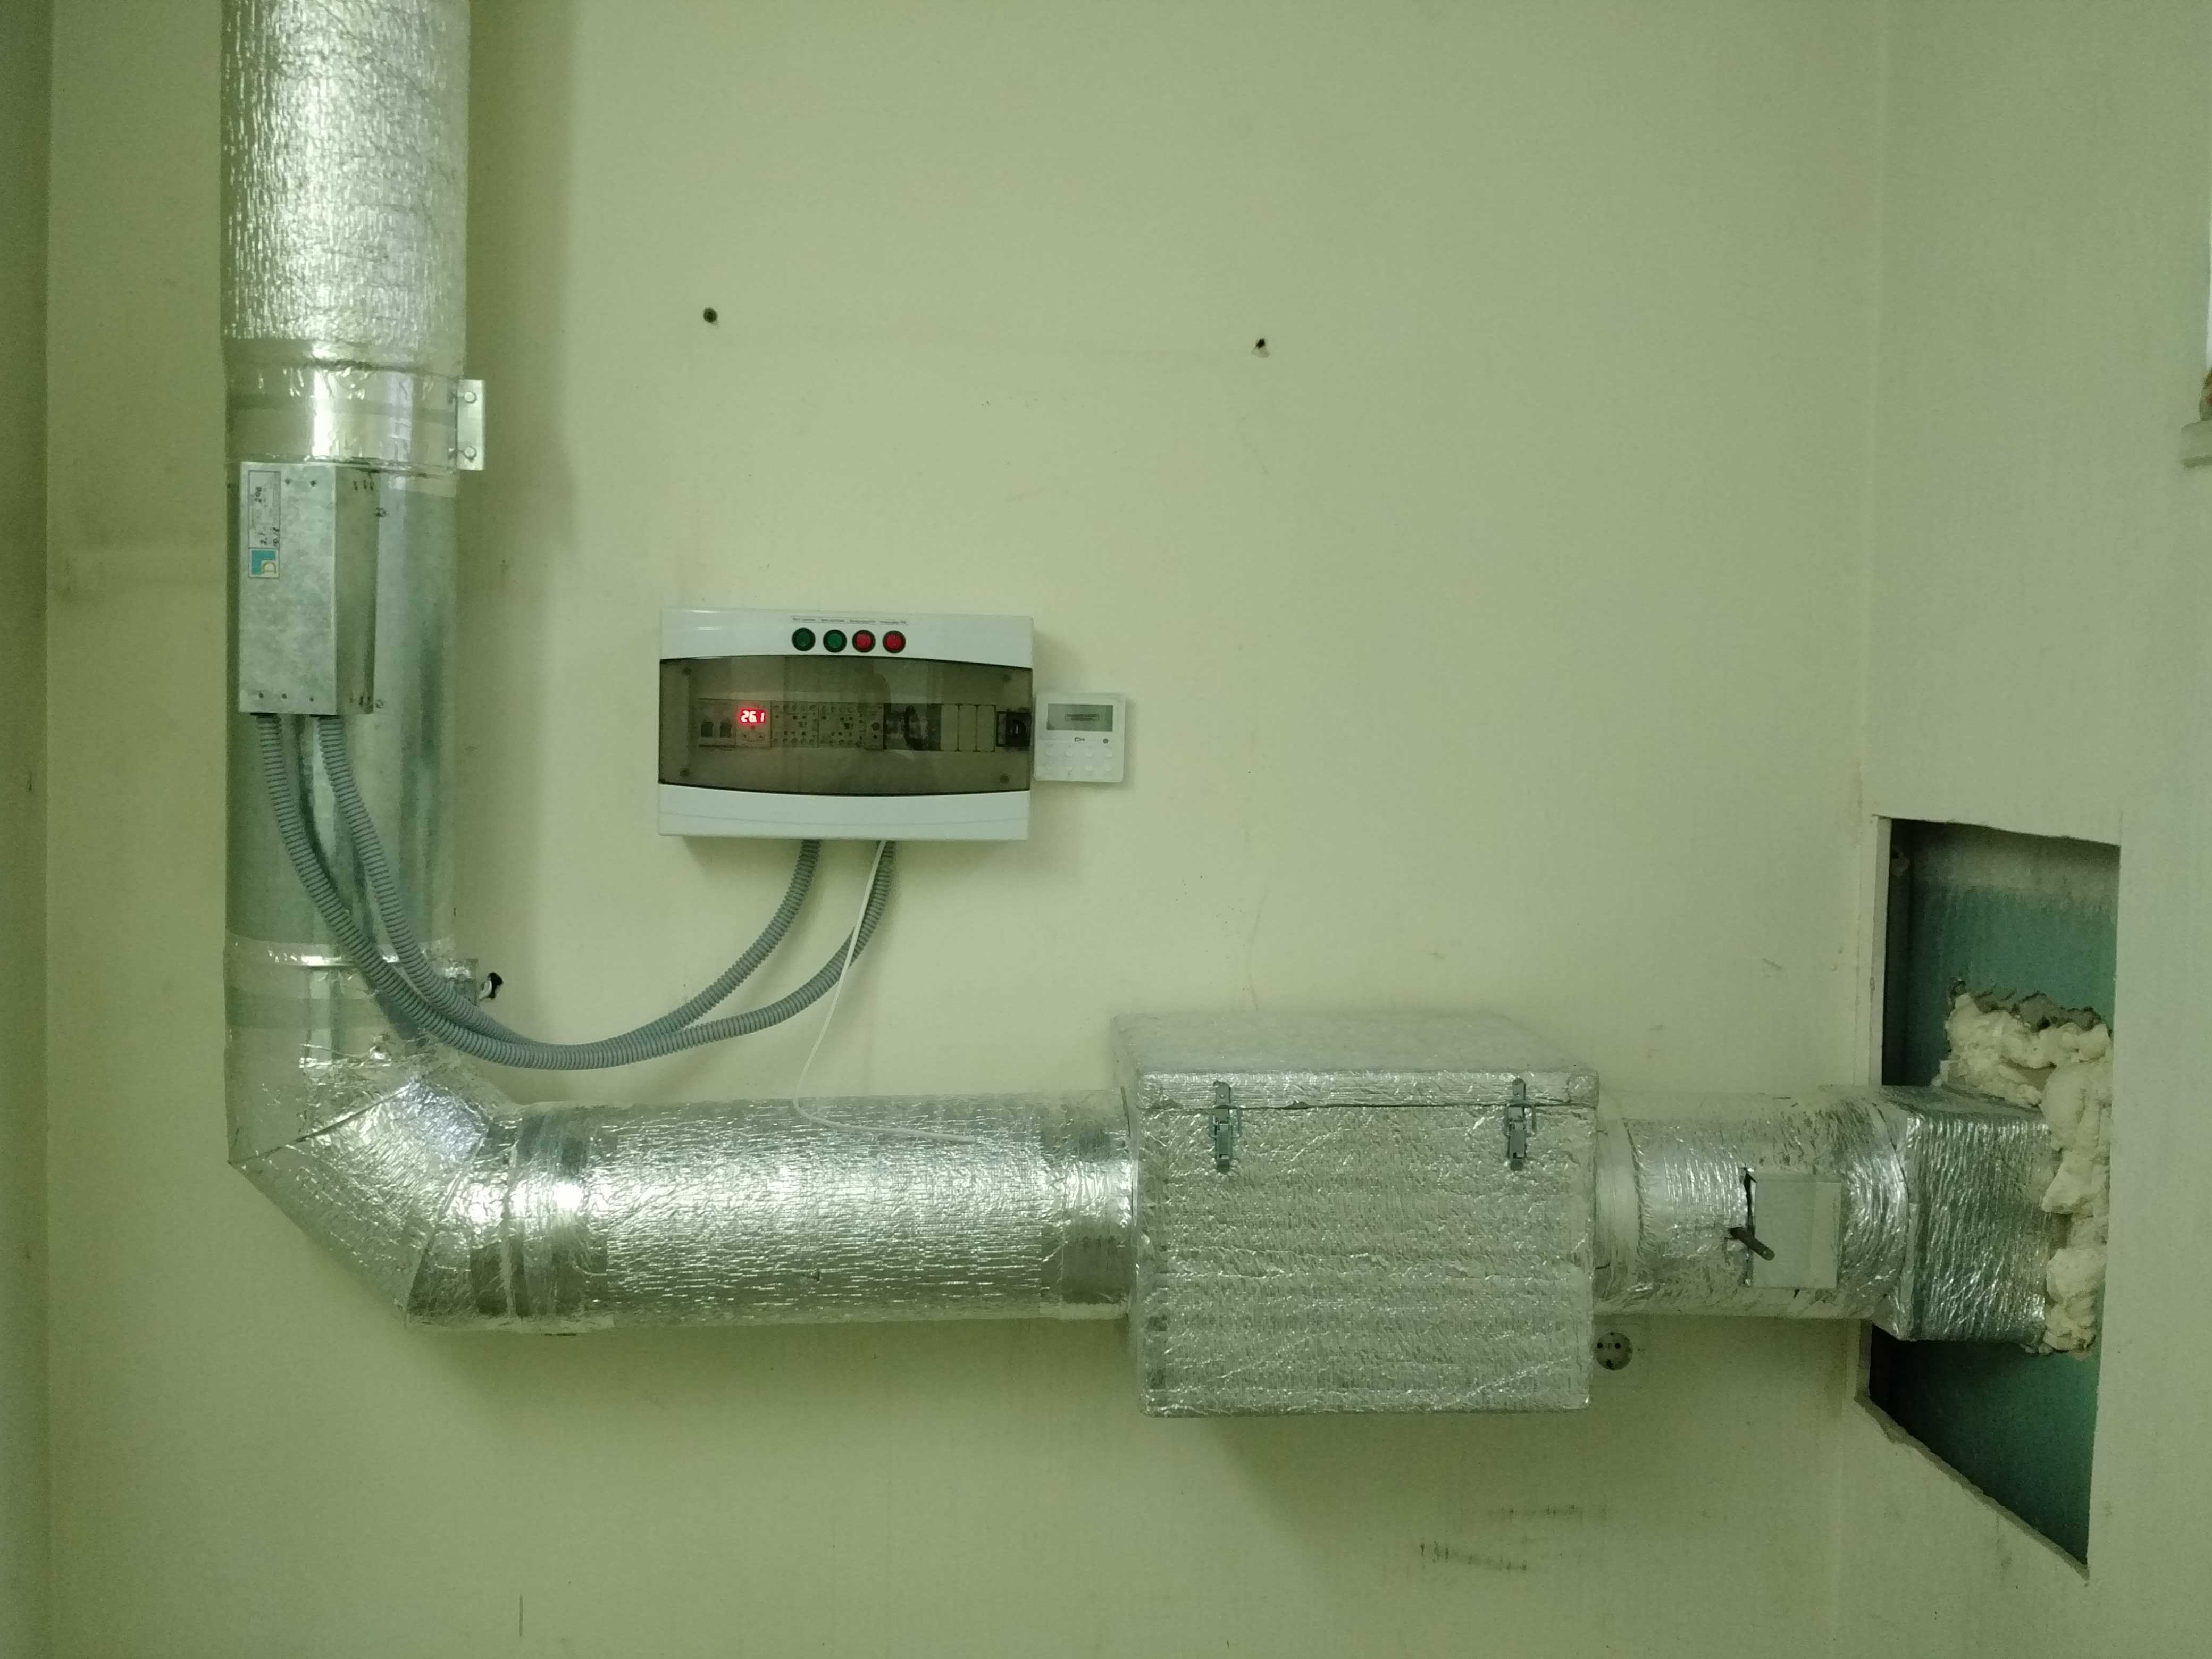 Приточный обогрев. Нагреватель воздуха для приточной вентиляции водяной. Система подогрева воздуха в приточной вентиляции. Приточка с подогревом 315. Электро подогрев вентиляции воздуха в приточной вентиляции.